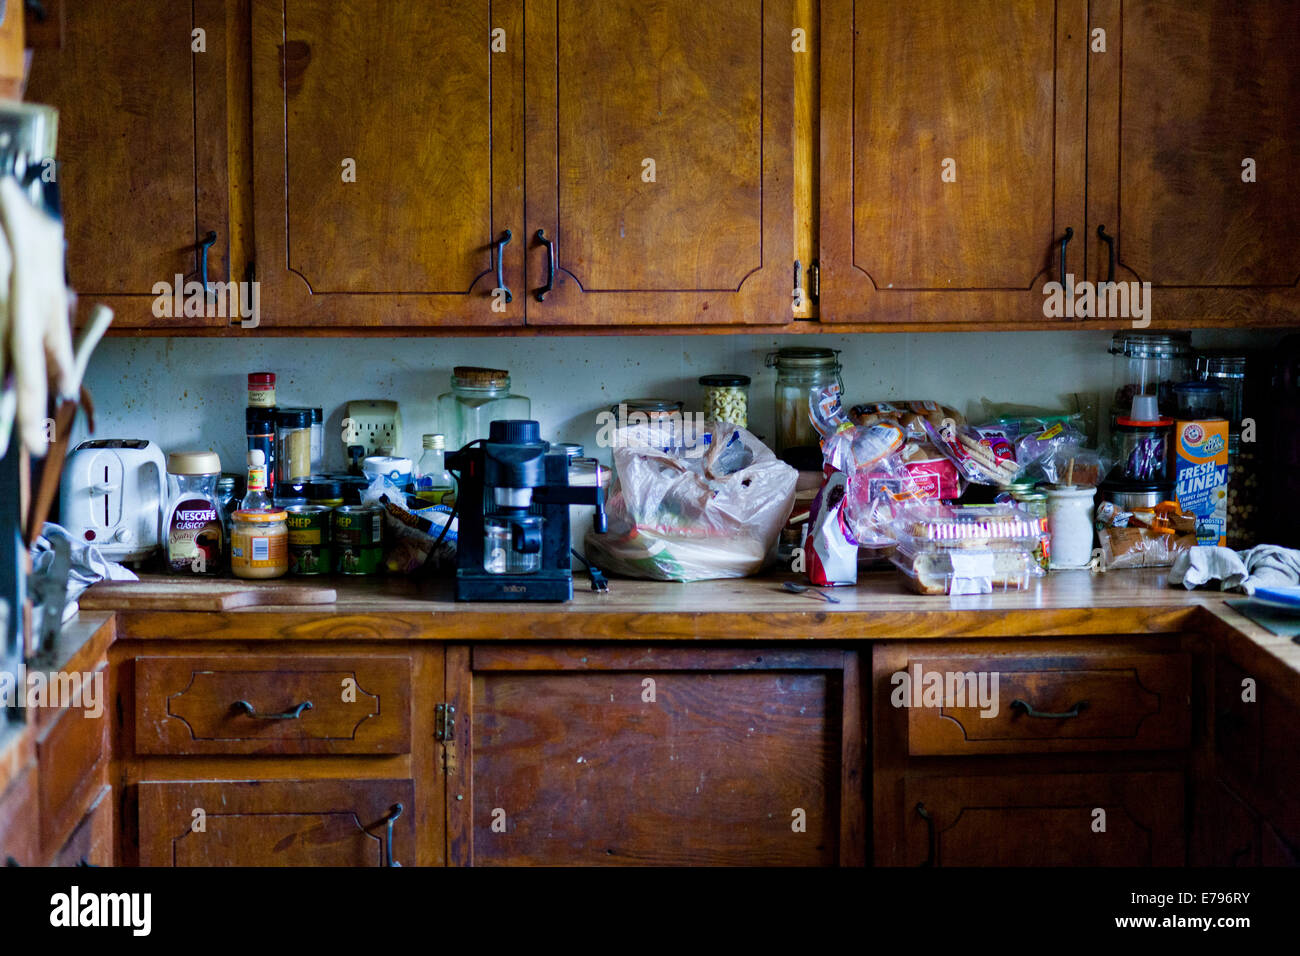 Untidy kitchen Stock Photo